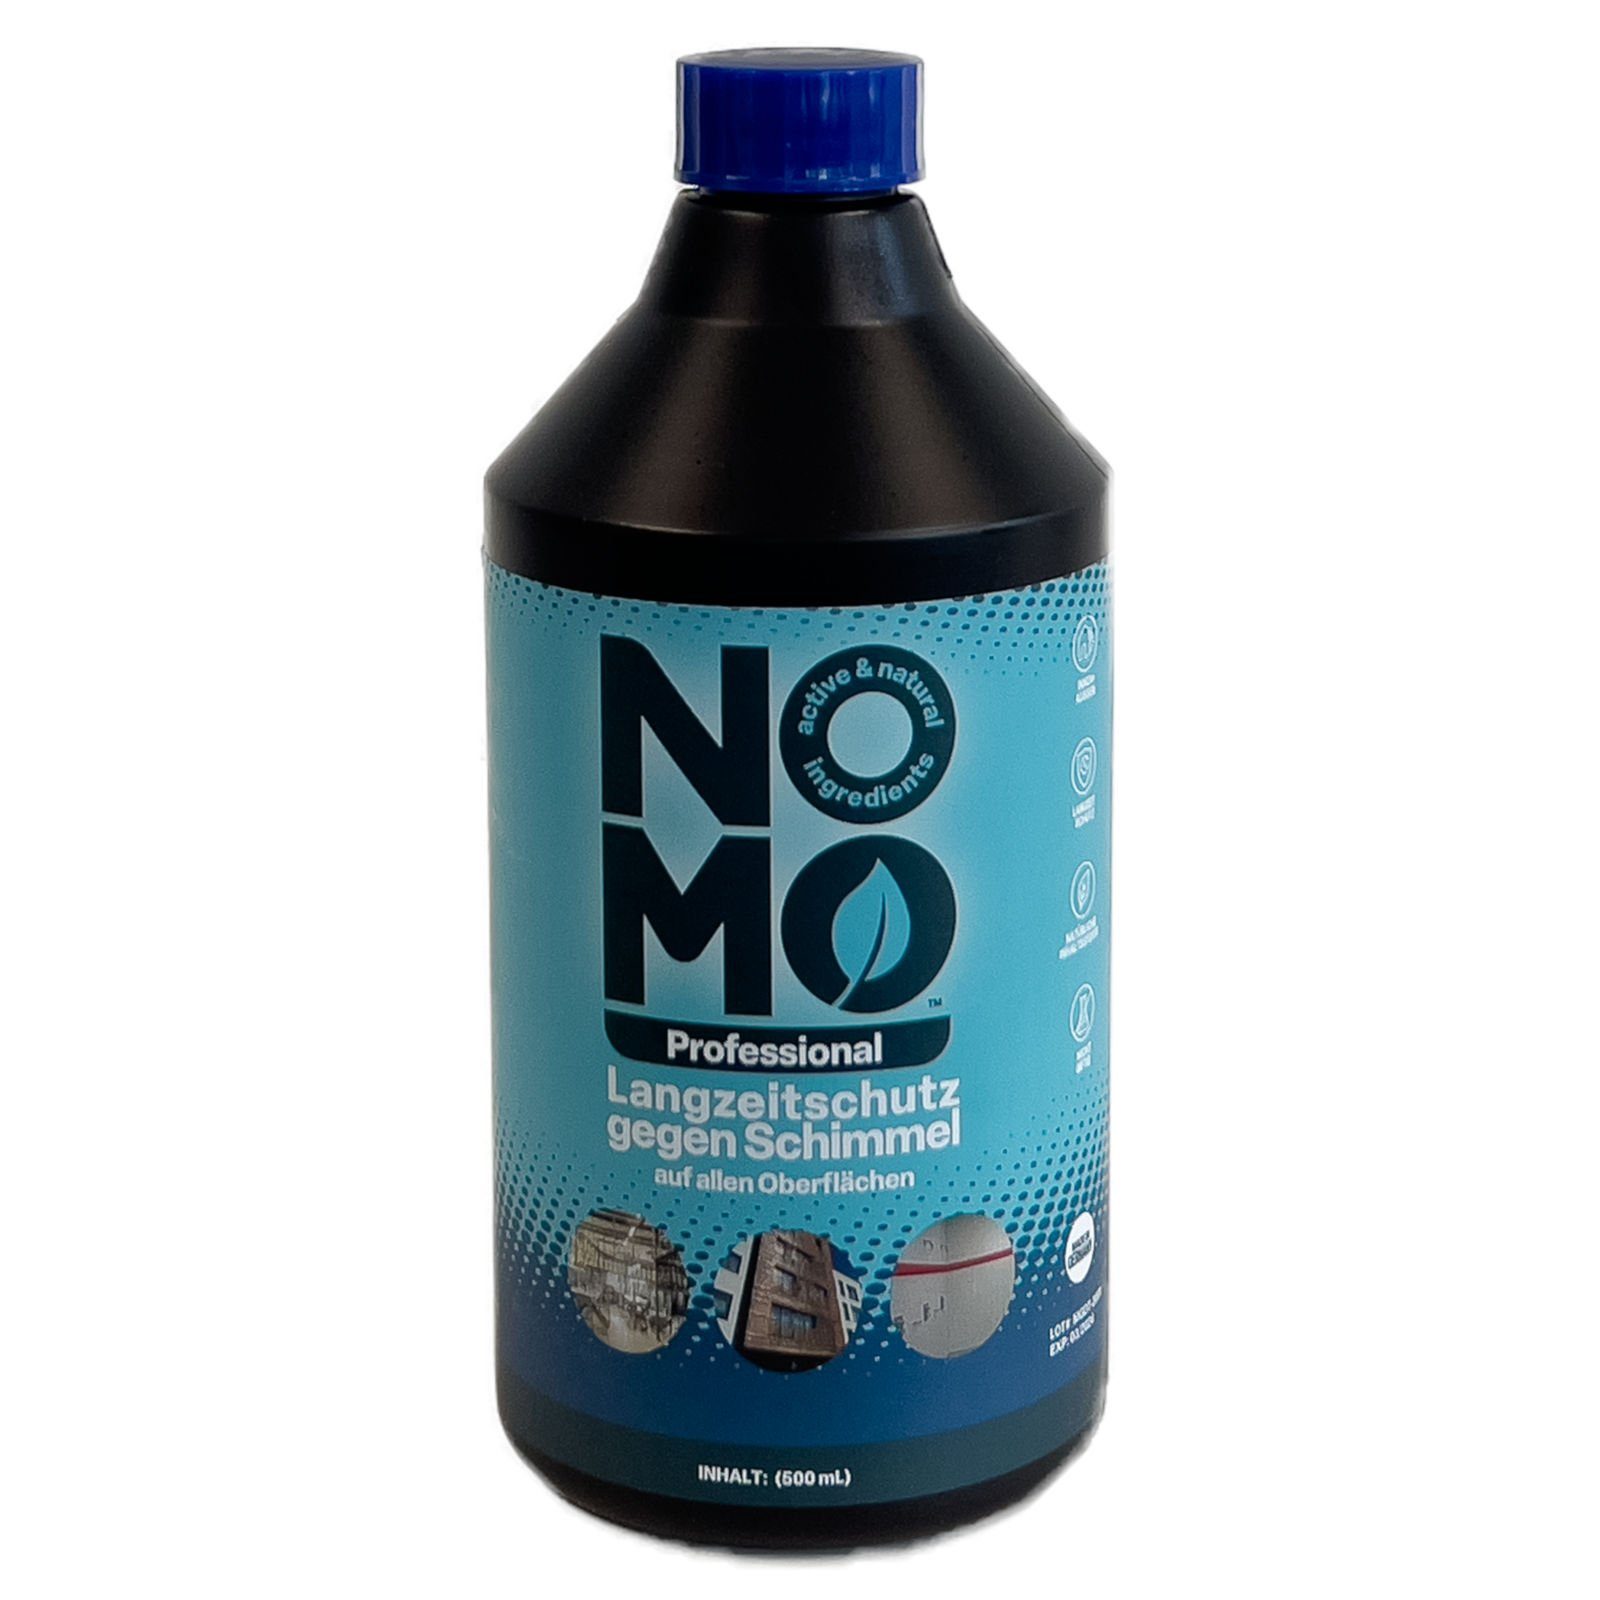 NOMO Professional Langzeitschutz gegen Schimmel - 500 ml Schimmelentferner | Schimmelentferner